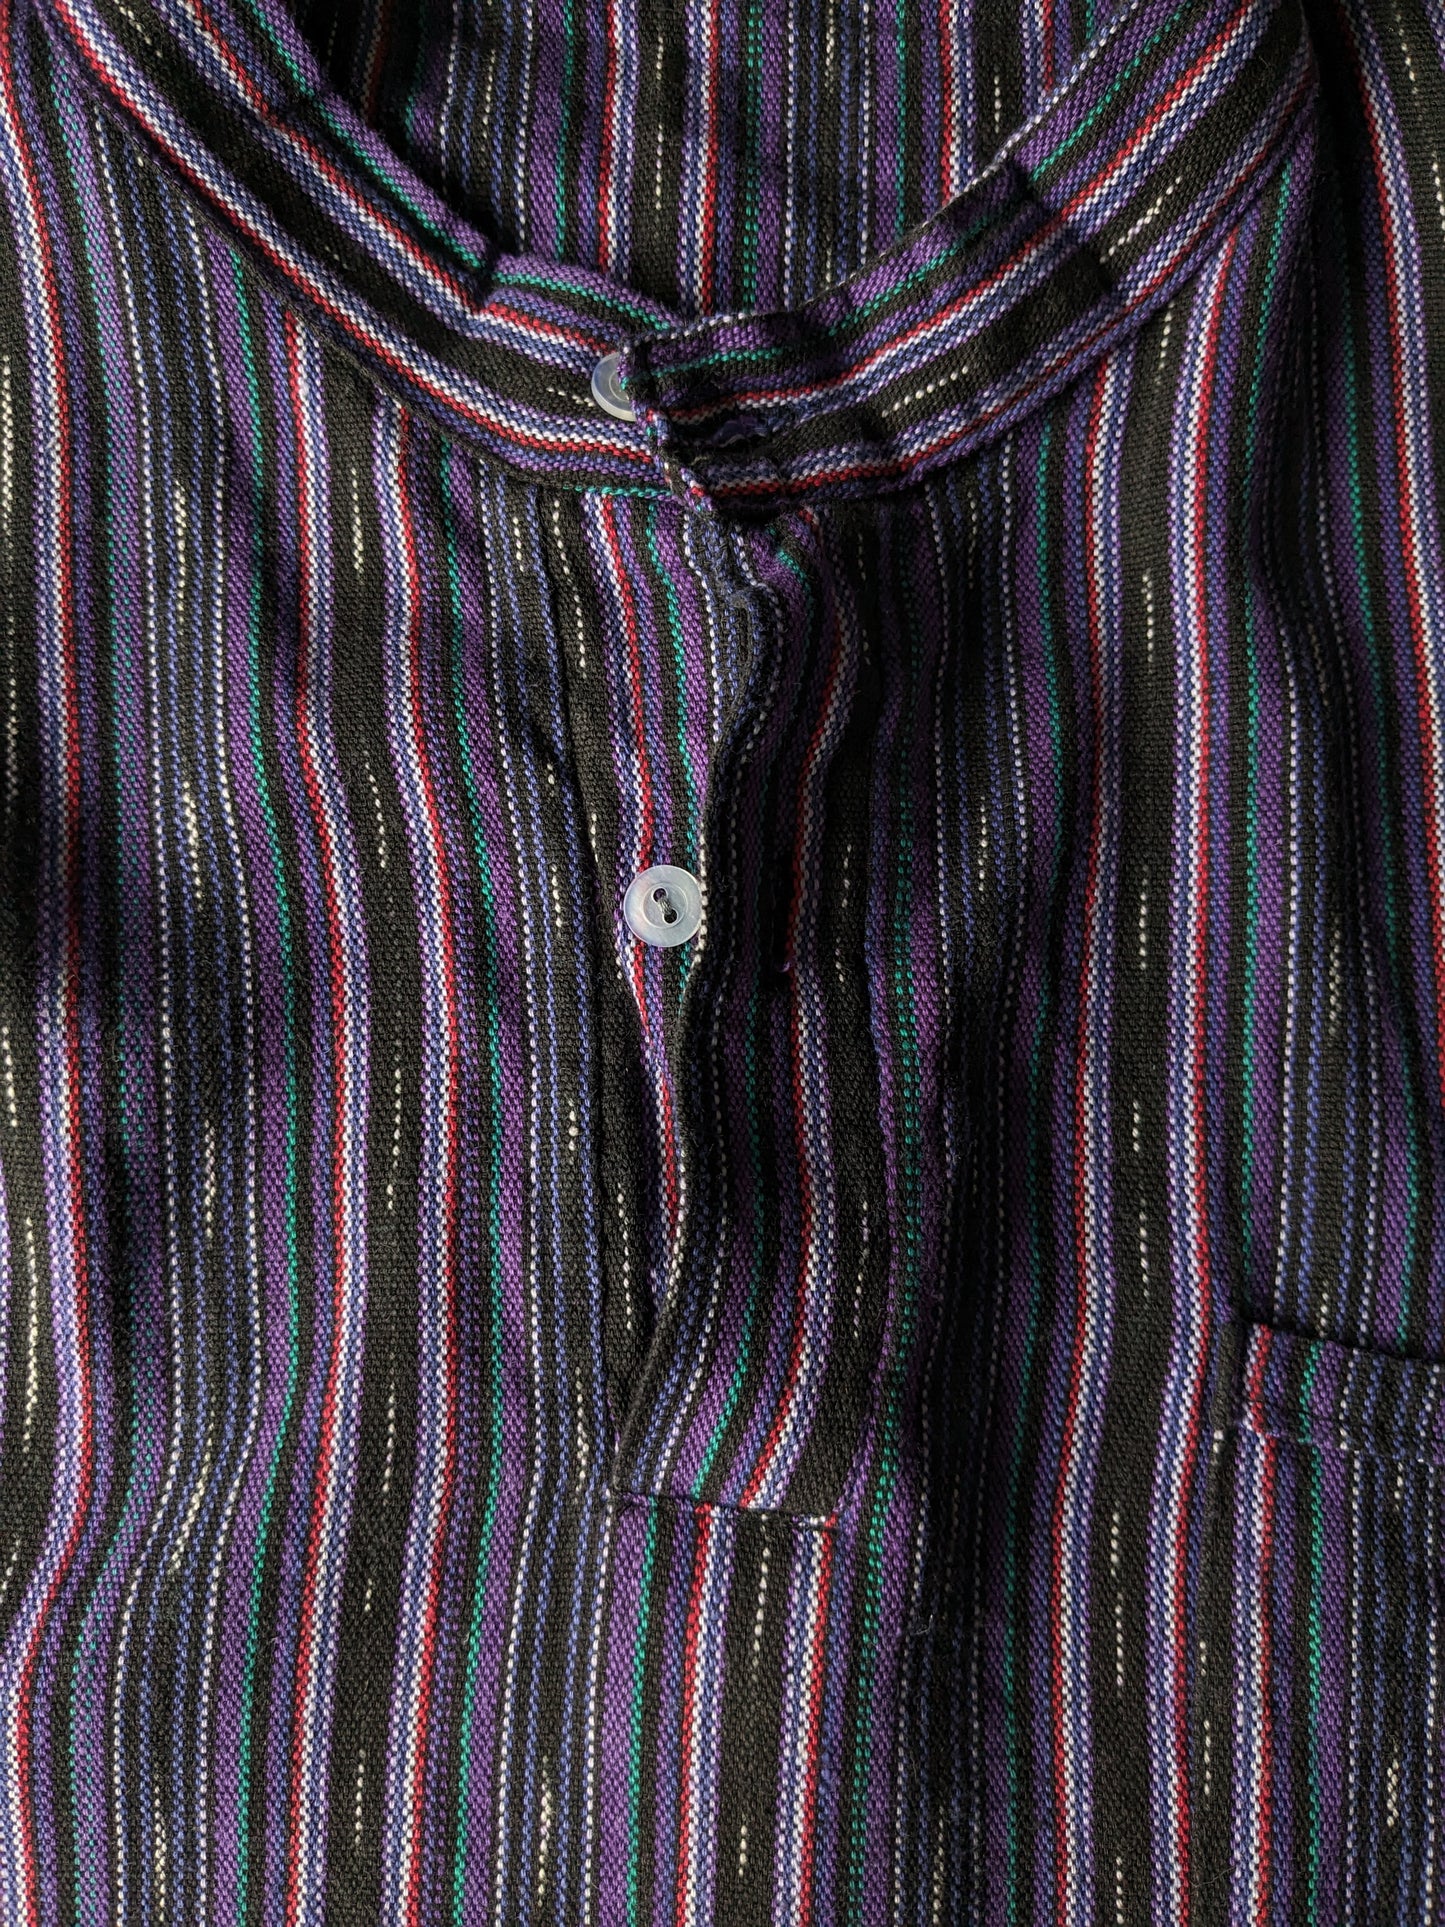 Polo vintage avec mao / agriculteur / col levé. Black rouge vert violet rayé. Taille L.